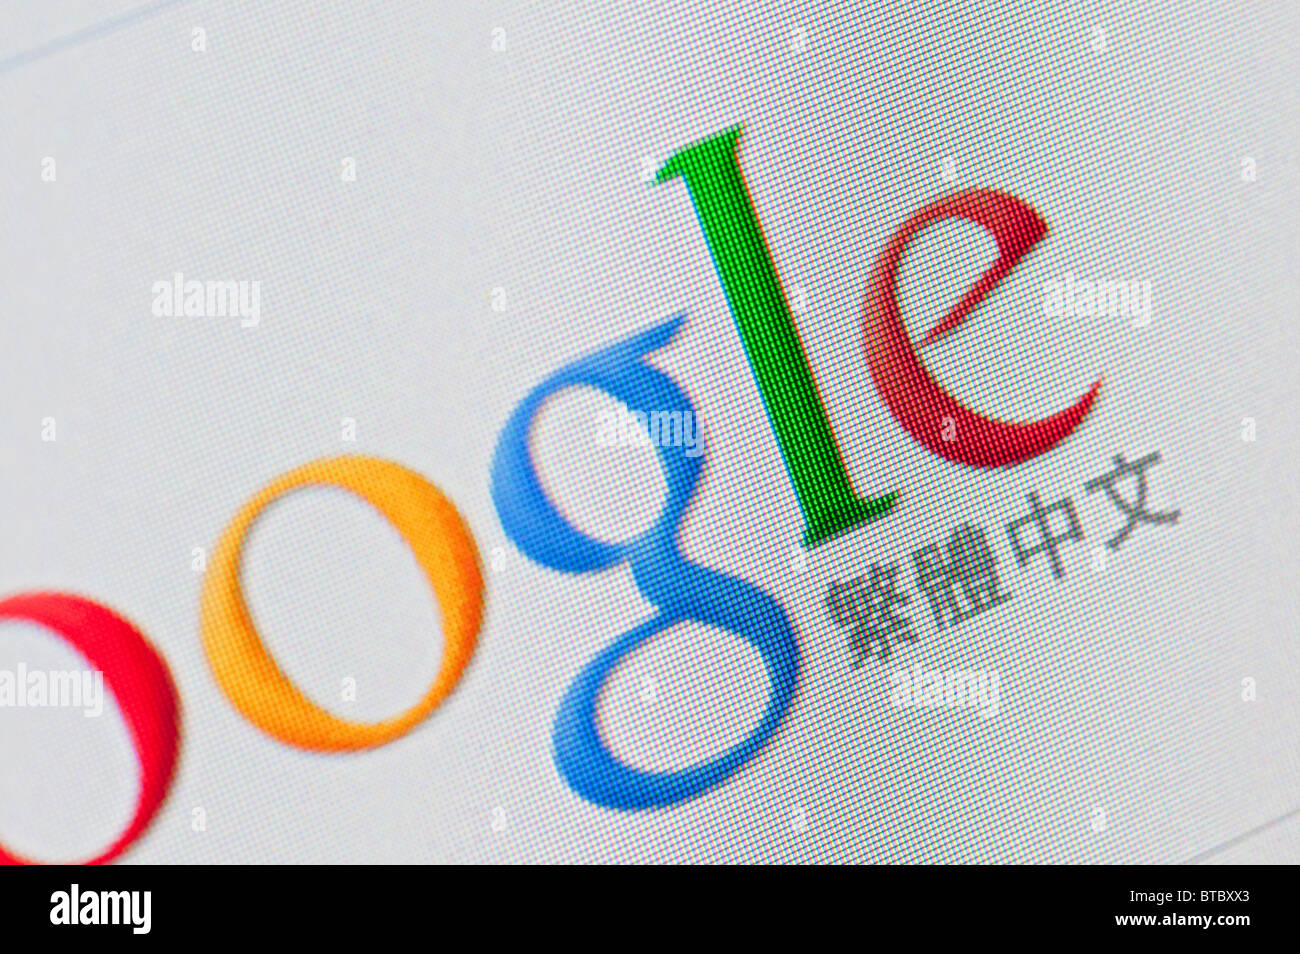 Capture d'écran de la page d'accueil de Google moteur de recherche internet site web chinois Banque D'Images